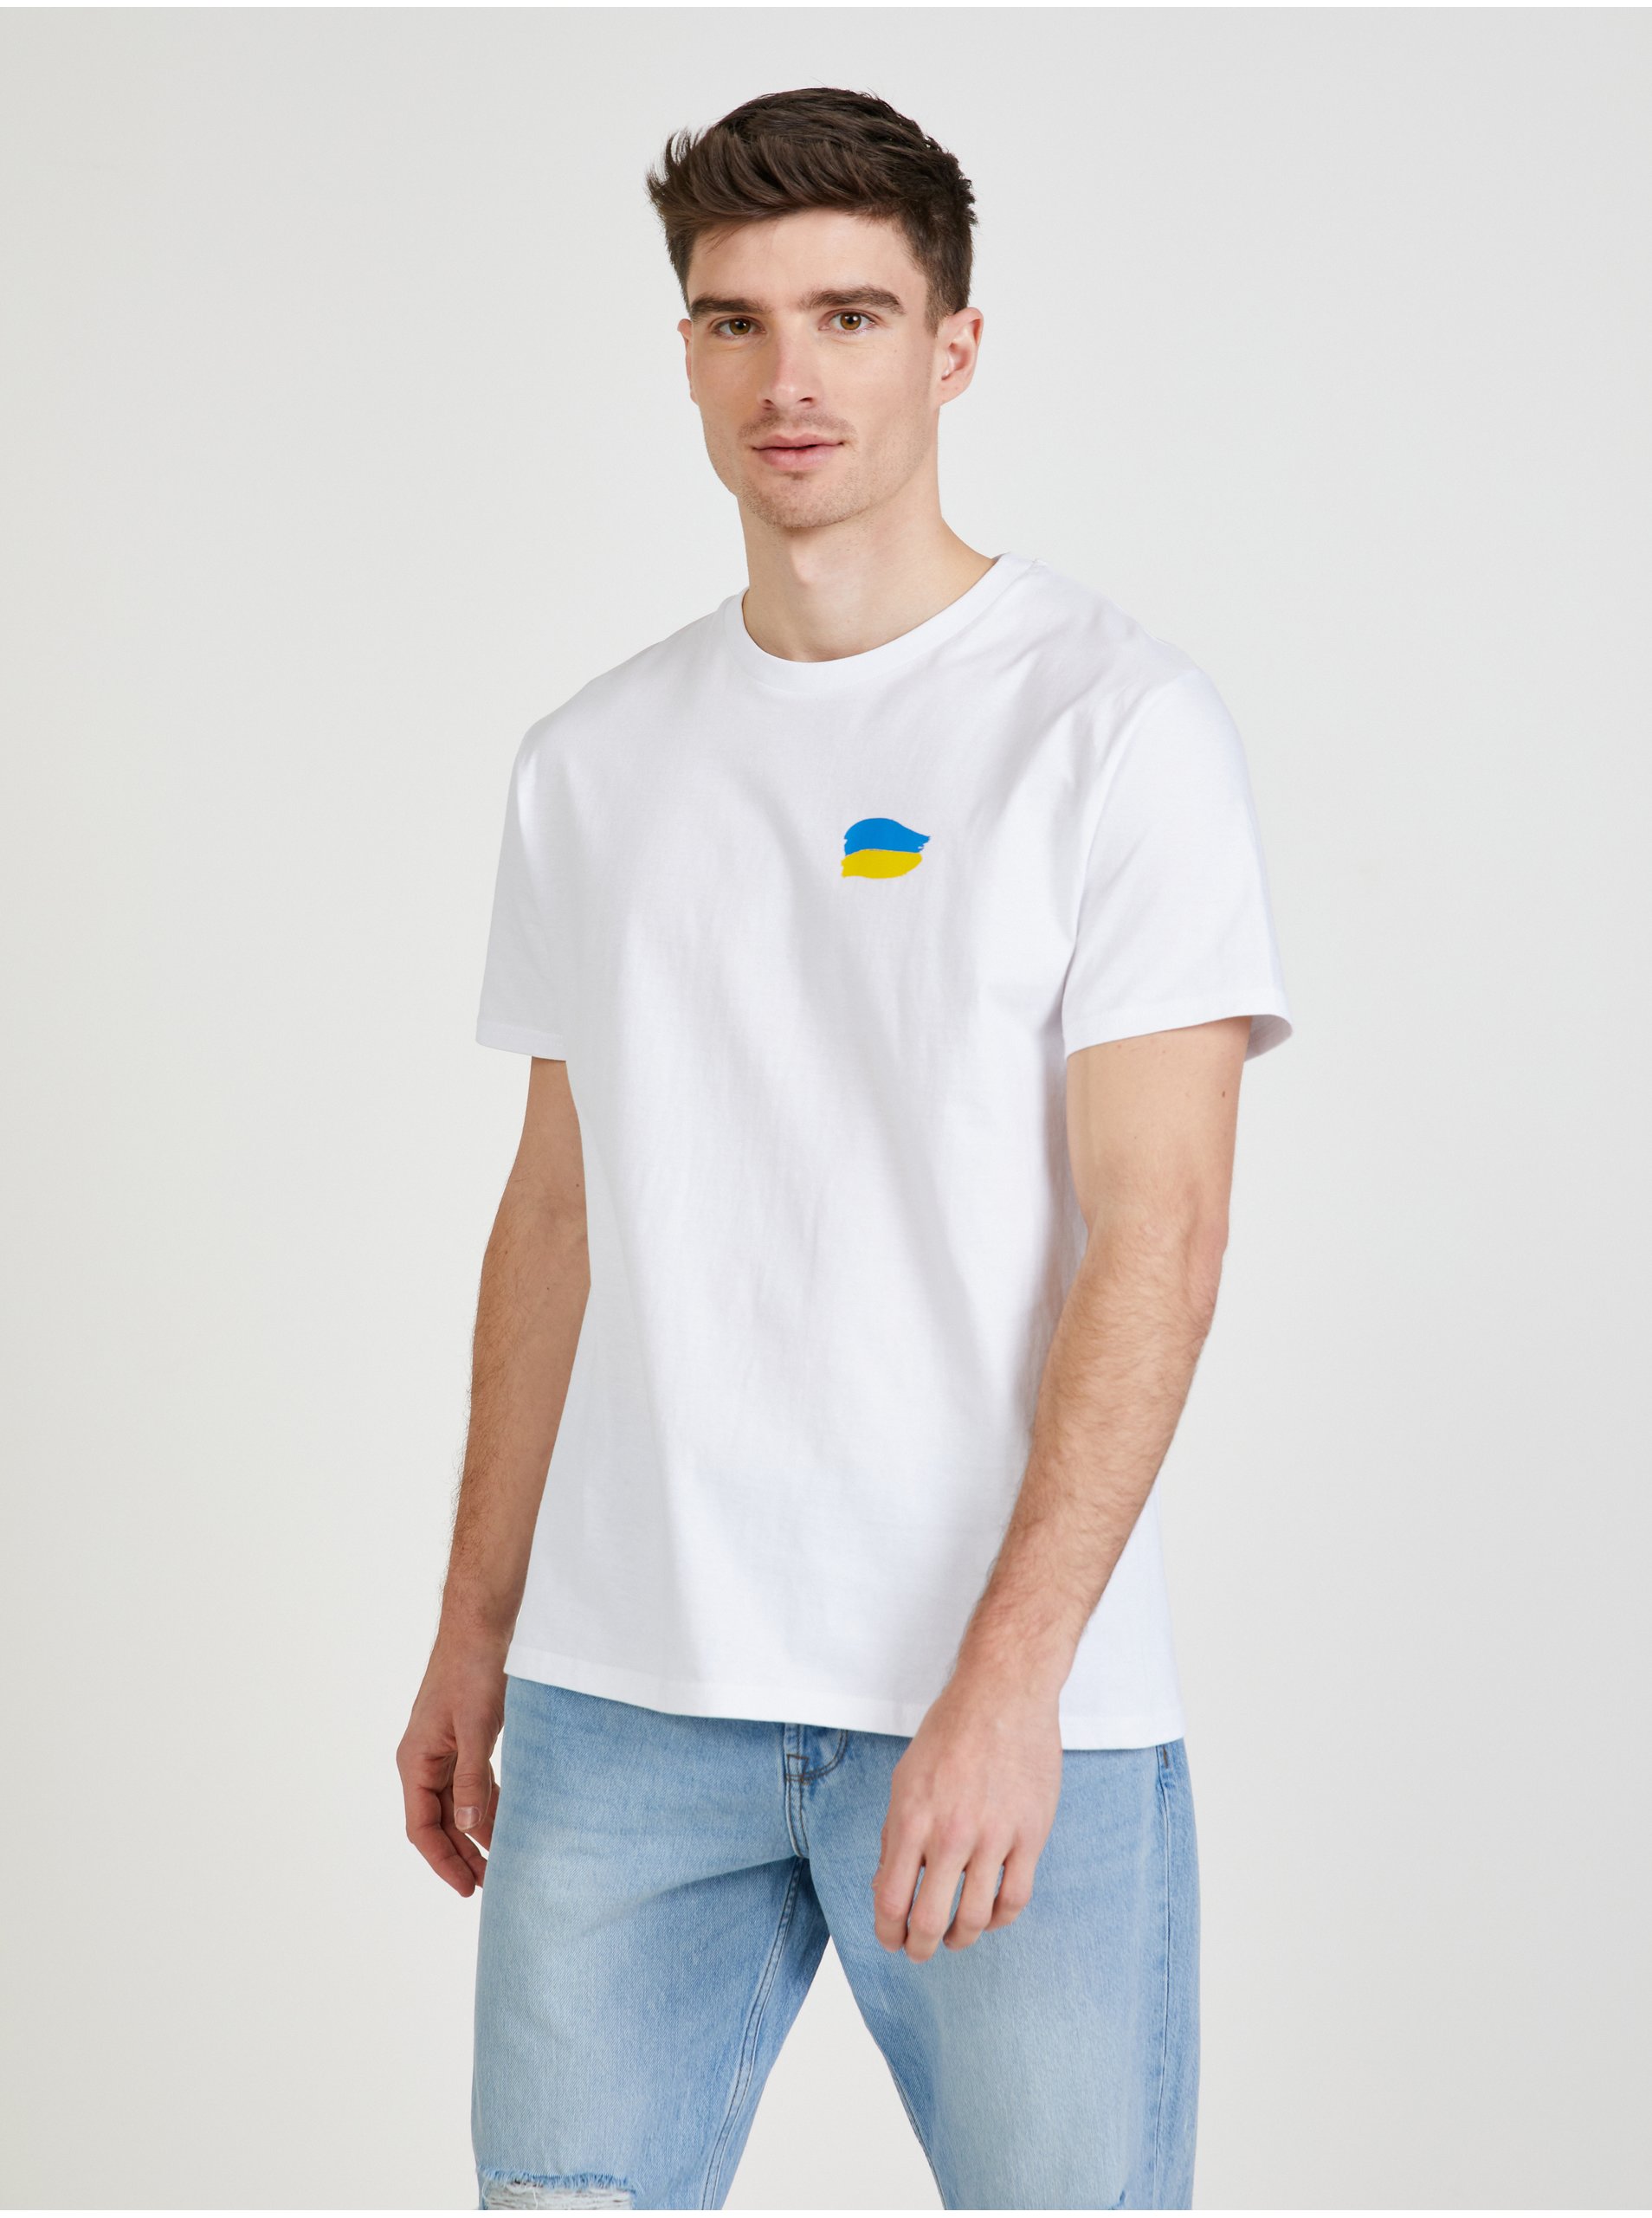 Levně Bílé pánské tričko Netřeba slov z kolekce DOBRO. pro Ukrajinu